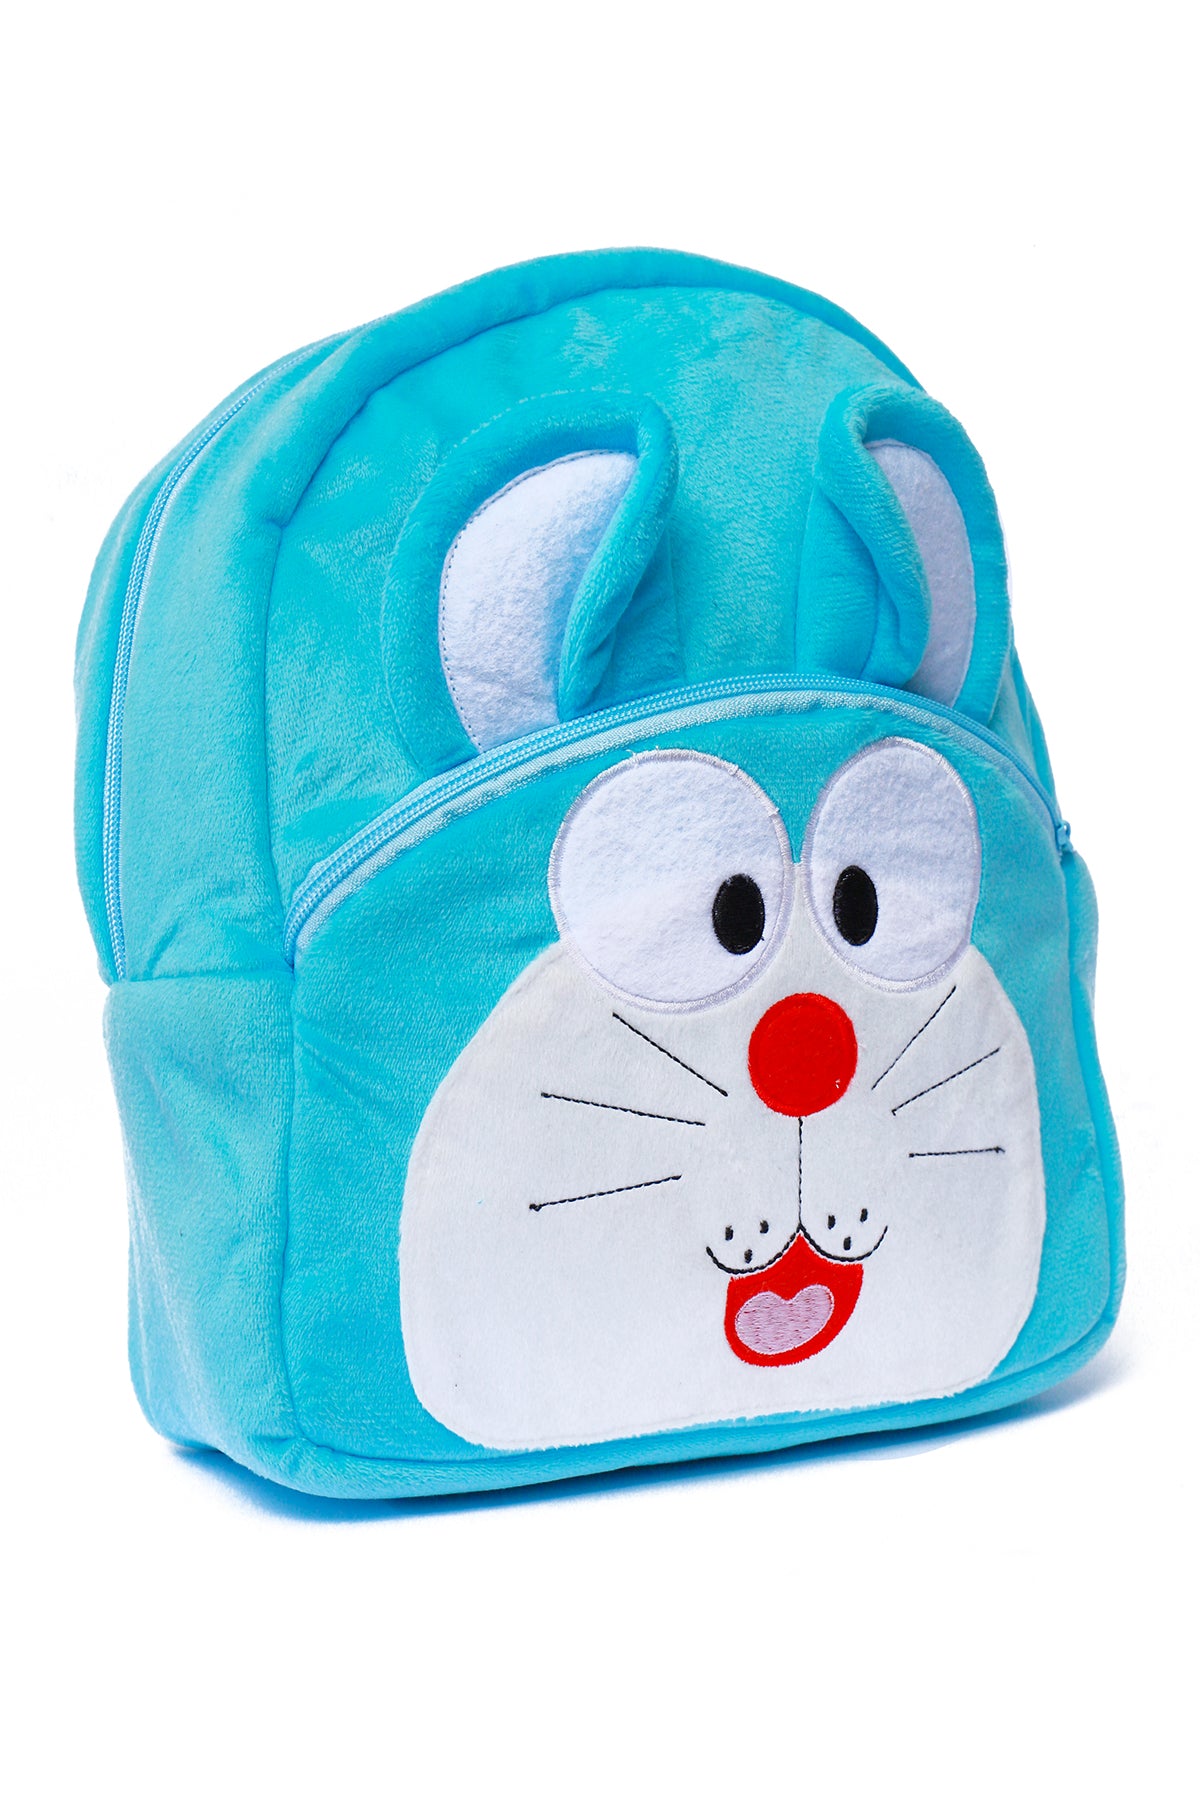 Doraemon Nursery Bag